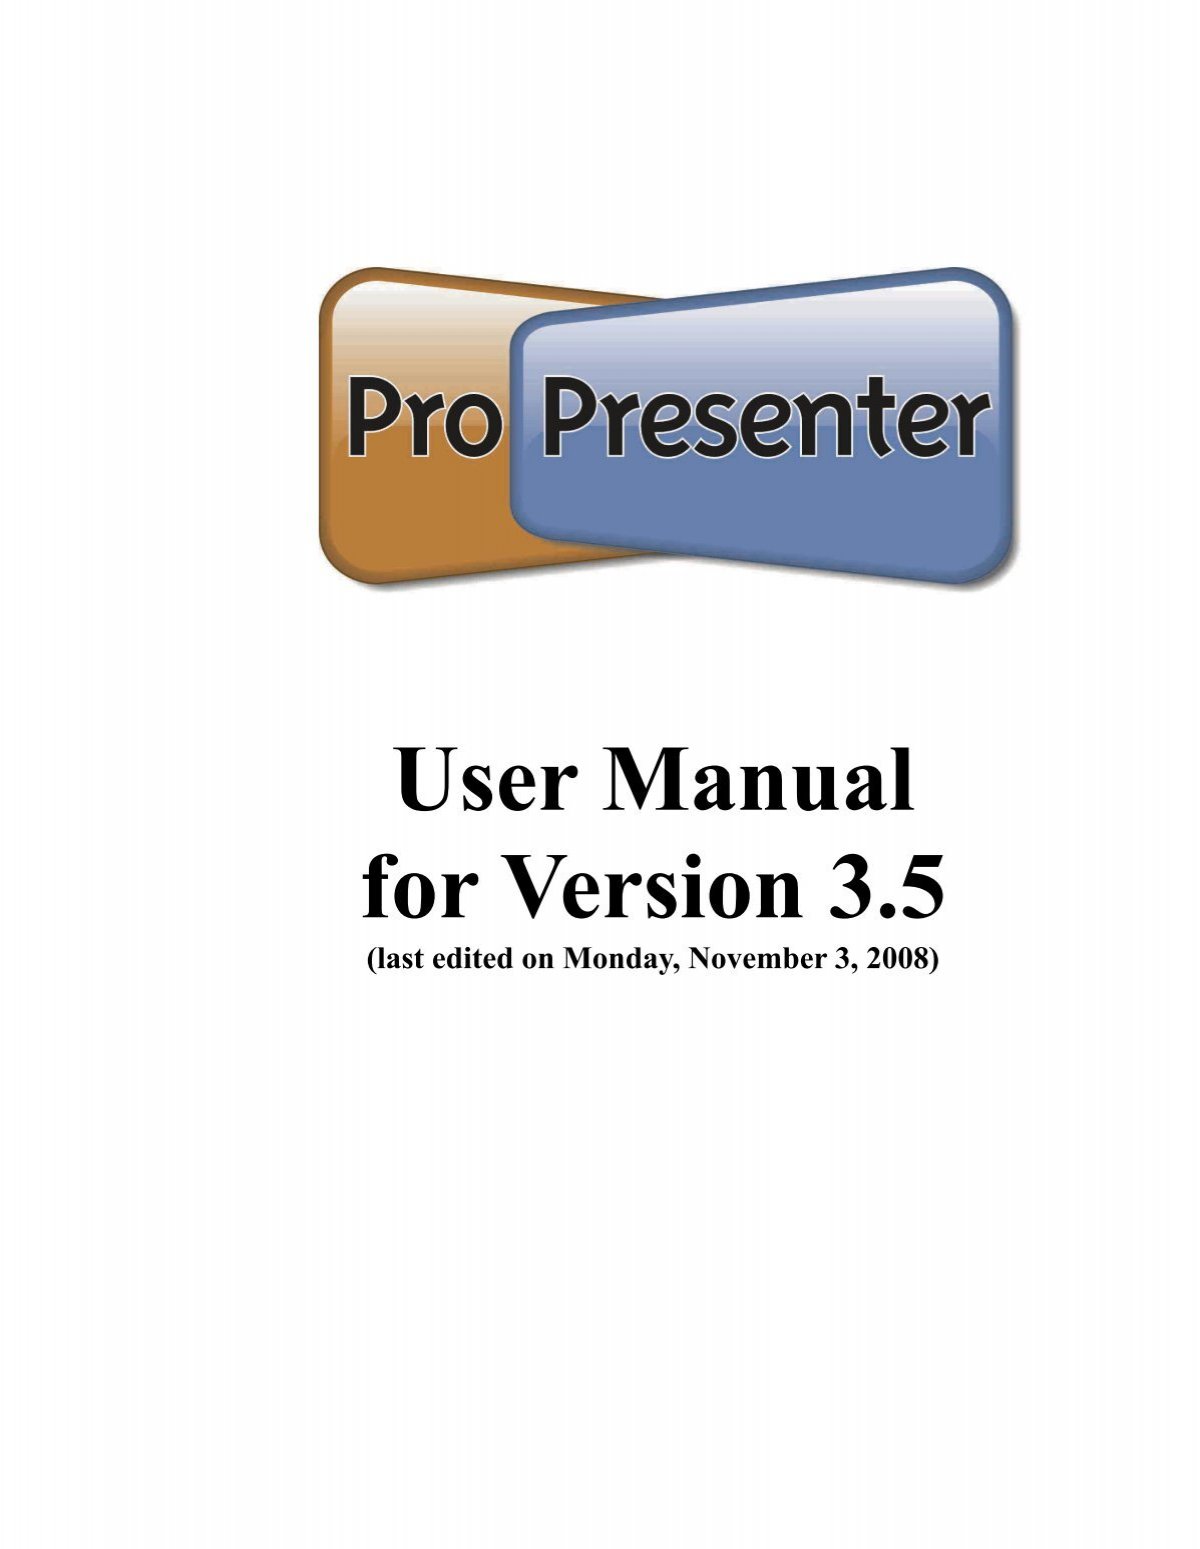 ProPresenter 7 là phần mềm tuyệt vời giúp bạn tạo ra những bài thuyết trình chuyên nghiệp. Với nó, bạn có thể dễ dàng chỉnh sửa, thêm nhạc và đóng góp cho bài thuyết trình của mình trở nên hoàn hảo hơn bao giờ hết.